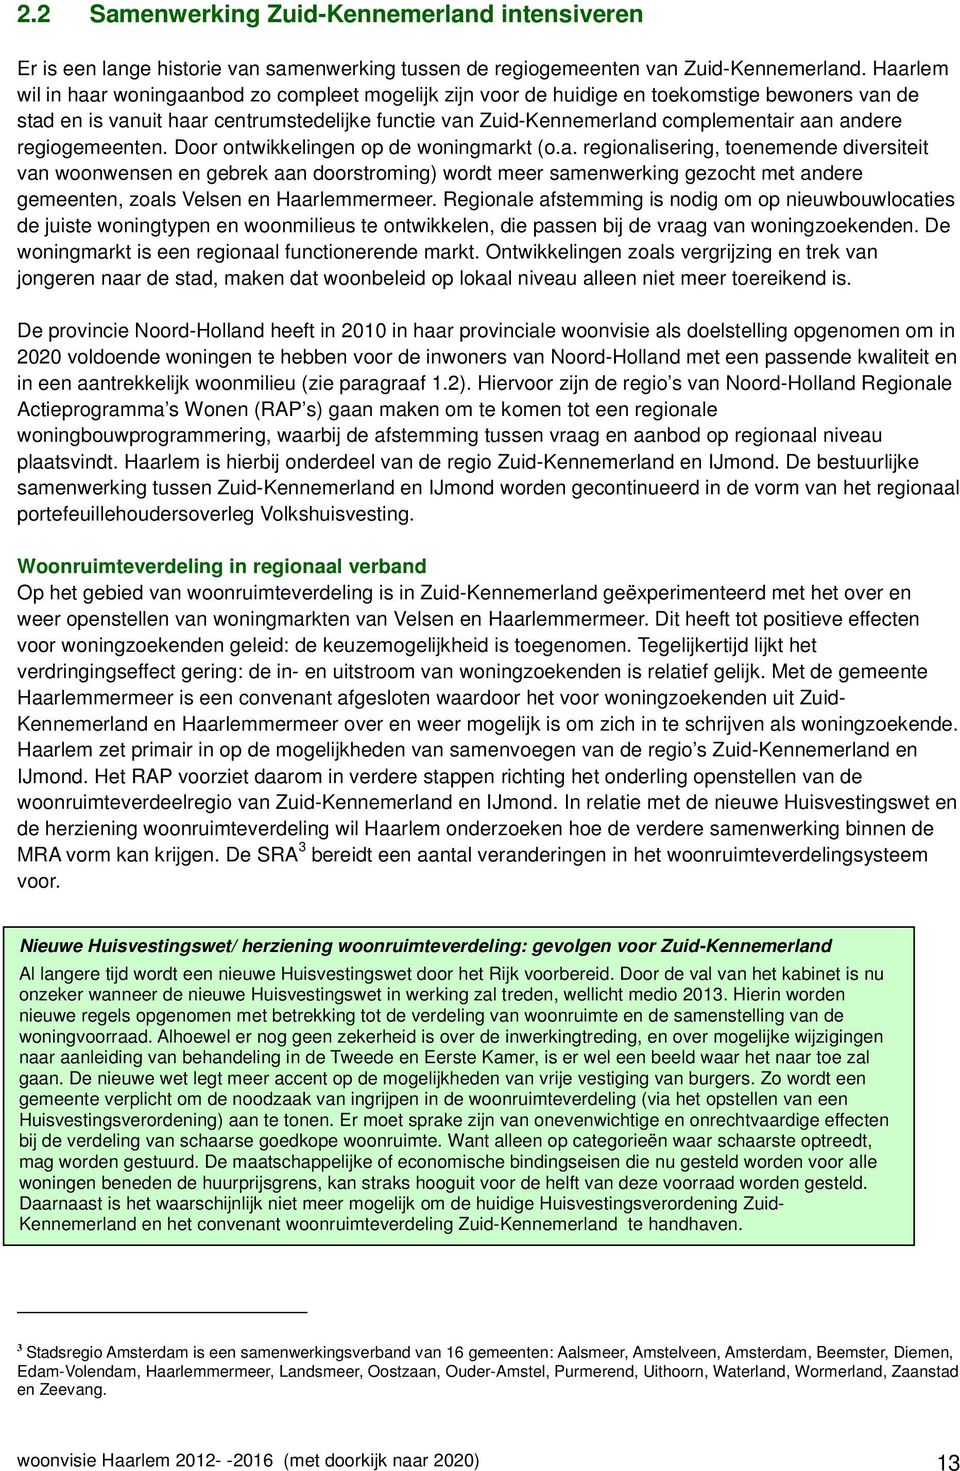 andere regiogemeenten. Door ontwikkelingen op de woningmarkt (o.a. regionalisering, toenemende diversiteit van woonwensen en gebrek aan doorstroming) wordt meer samenwerking gezocht met andere gemeenten, zoals Velsen en Haarlemmermeer.